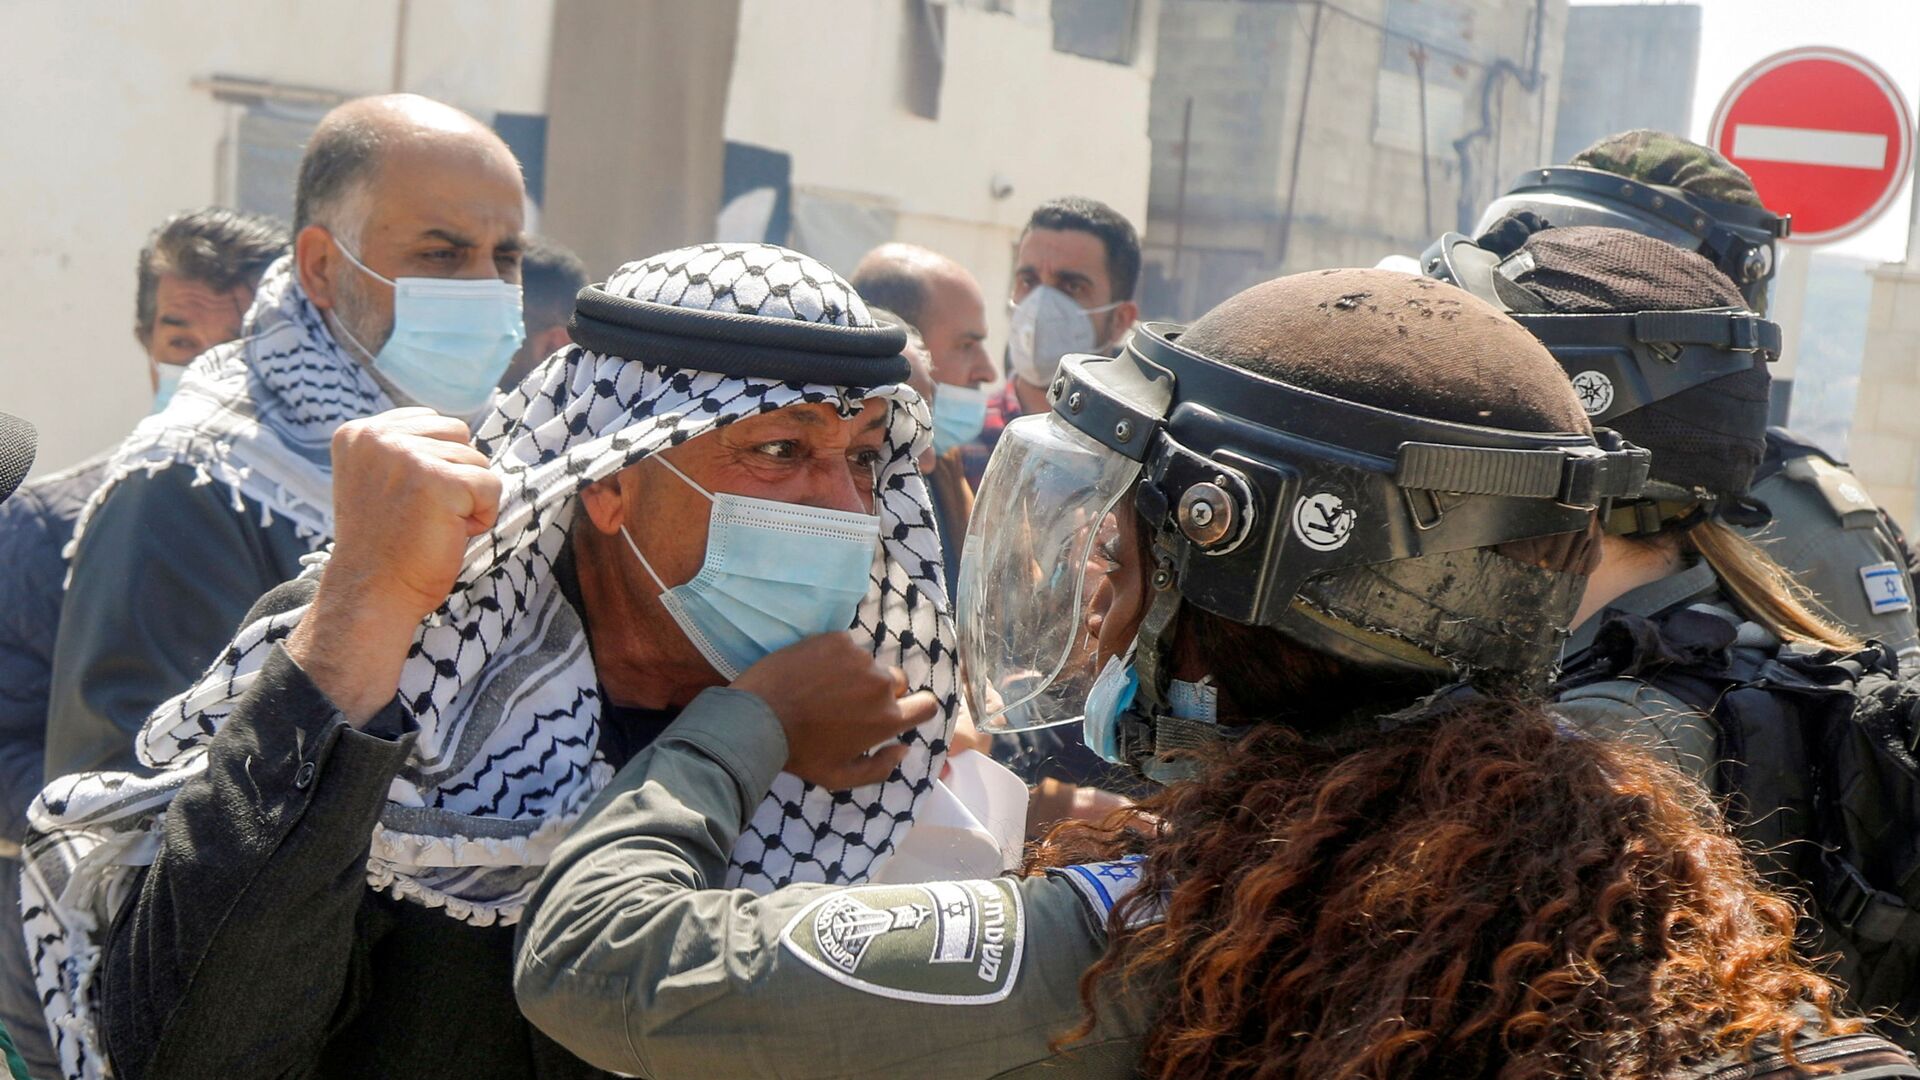 Палестинский демонстрант дерется с израильской пограничницей во время акции протеста в честь Дня земли в Себастии, фото из архива - Sputnik Азербайджан, 1920, 14.12.2021